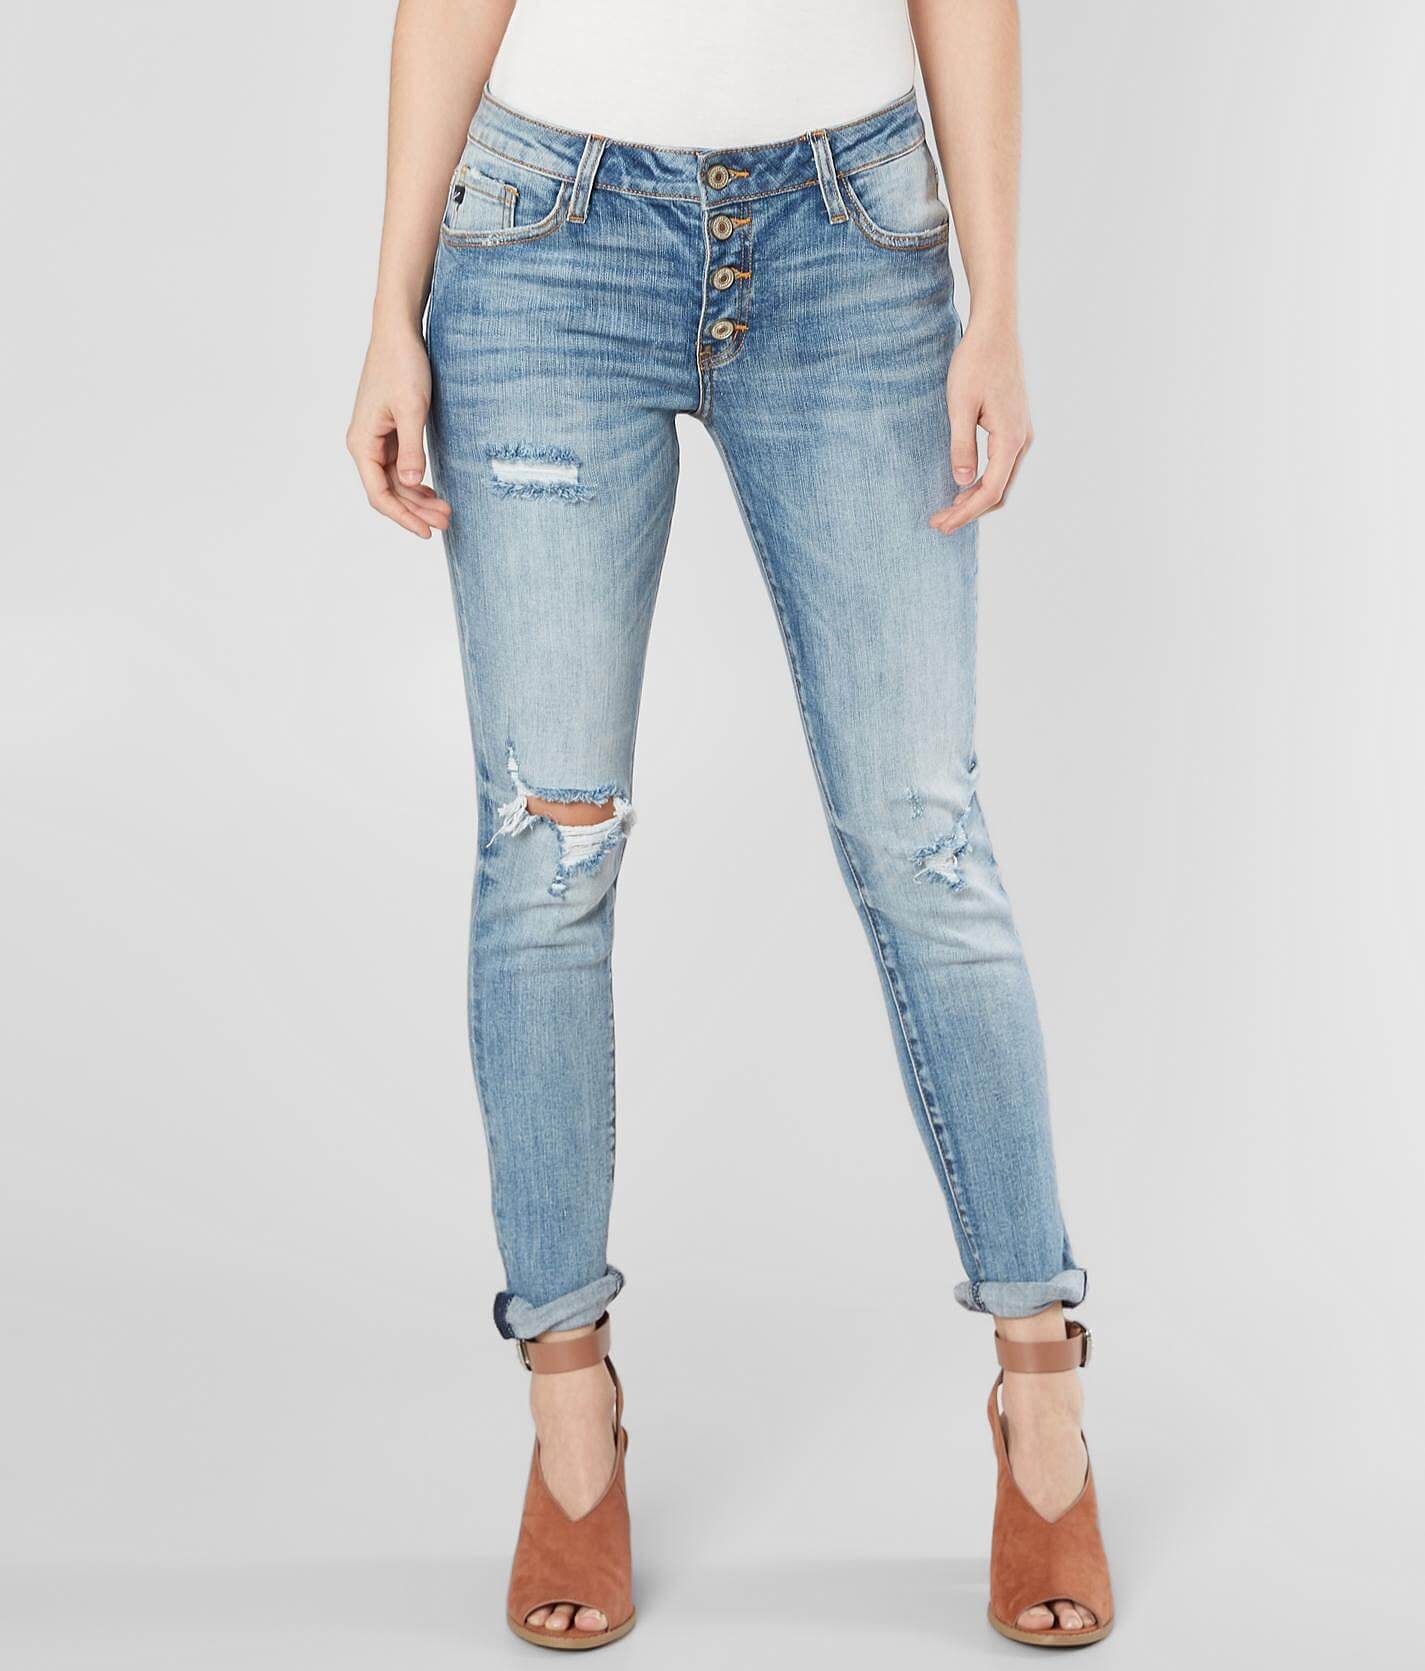 skinny girlfriend jeans